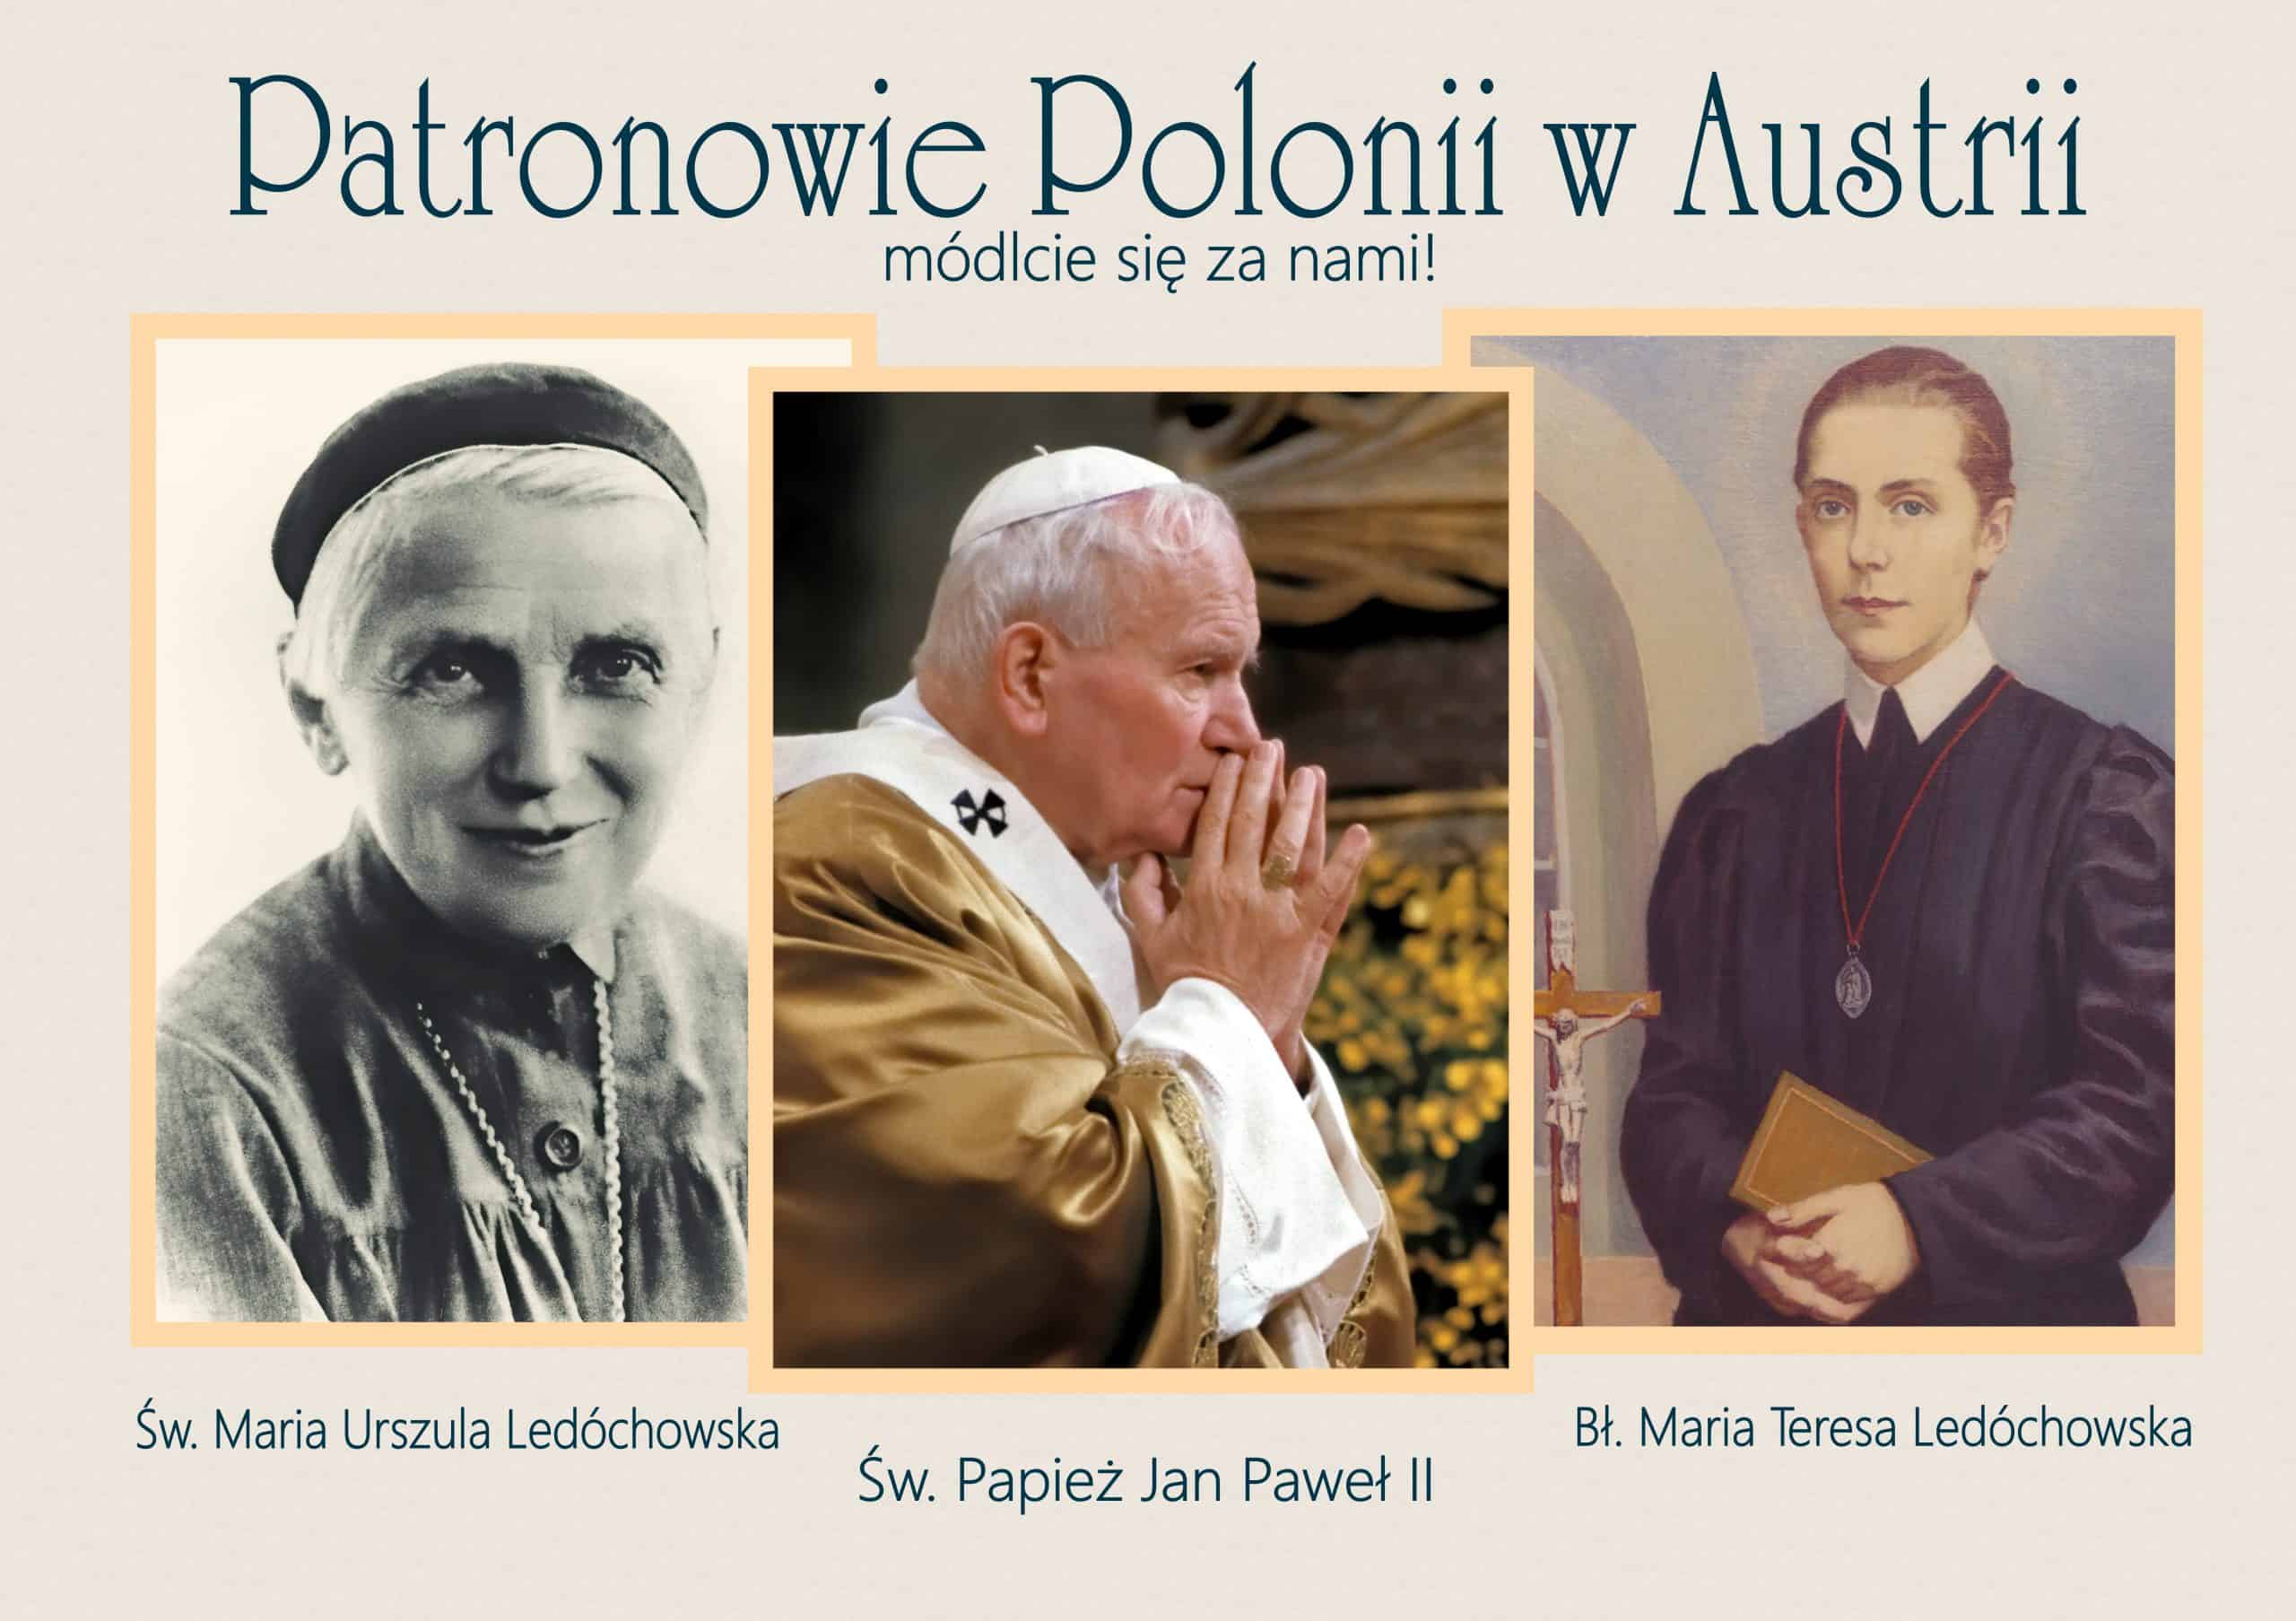 Polonia w Austrii otrzyma nowych patronów!